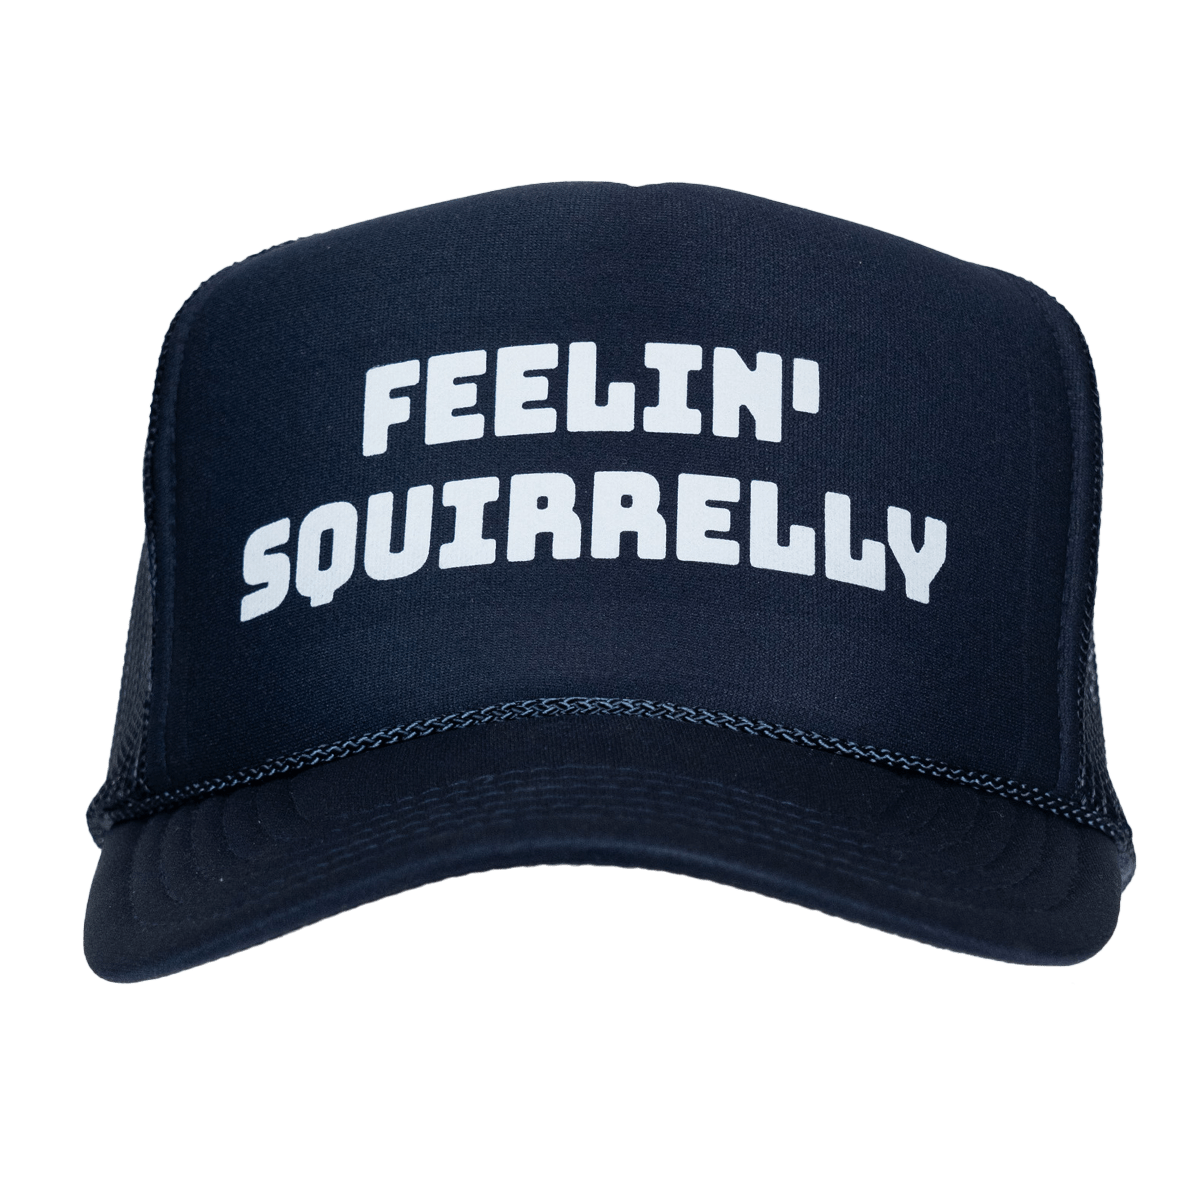 Feelin' Squirrelly Hat - You Betcha